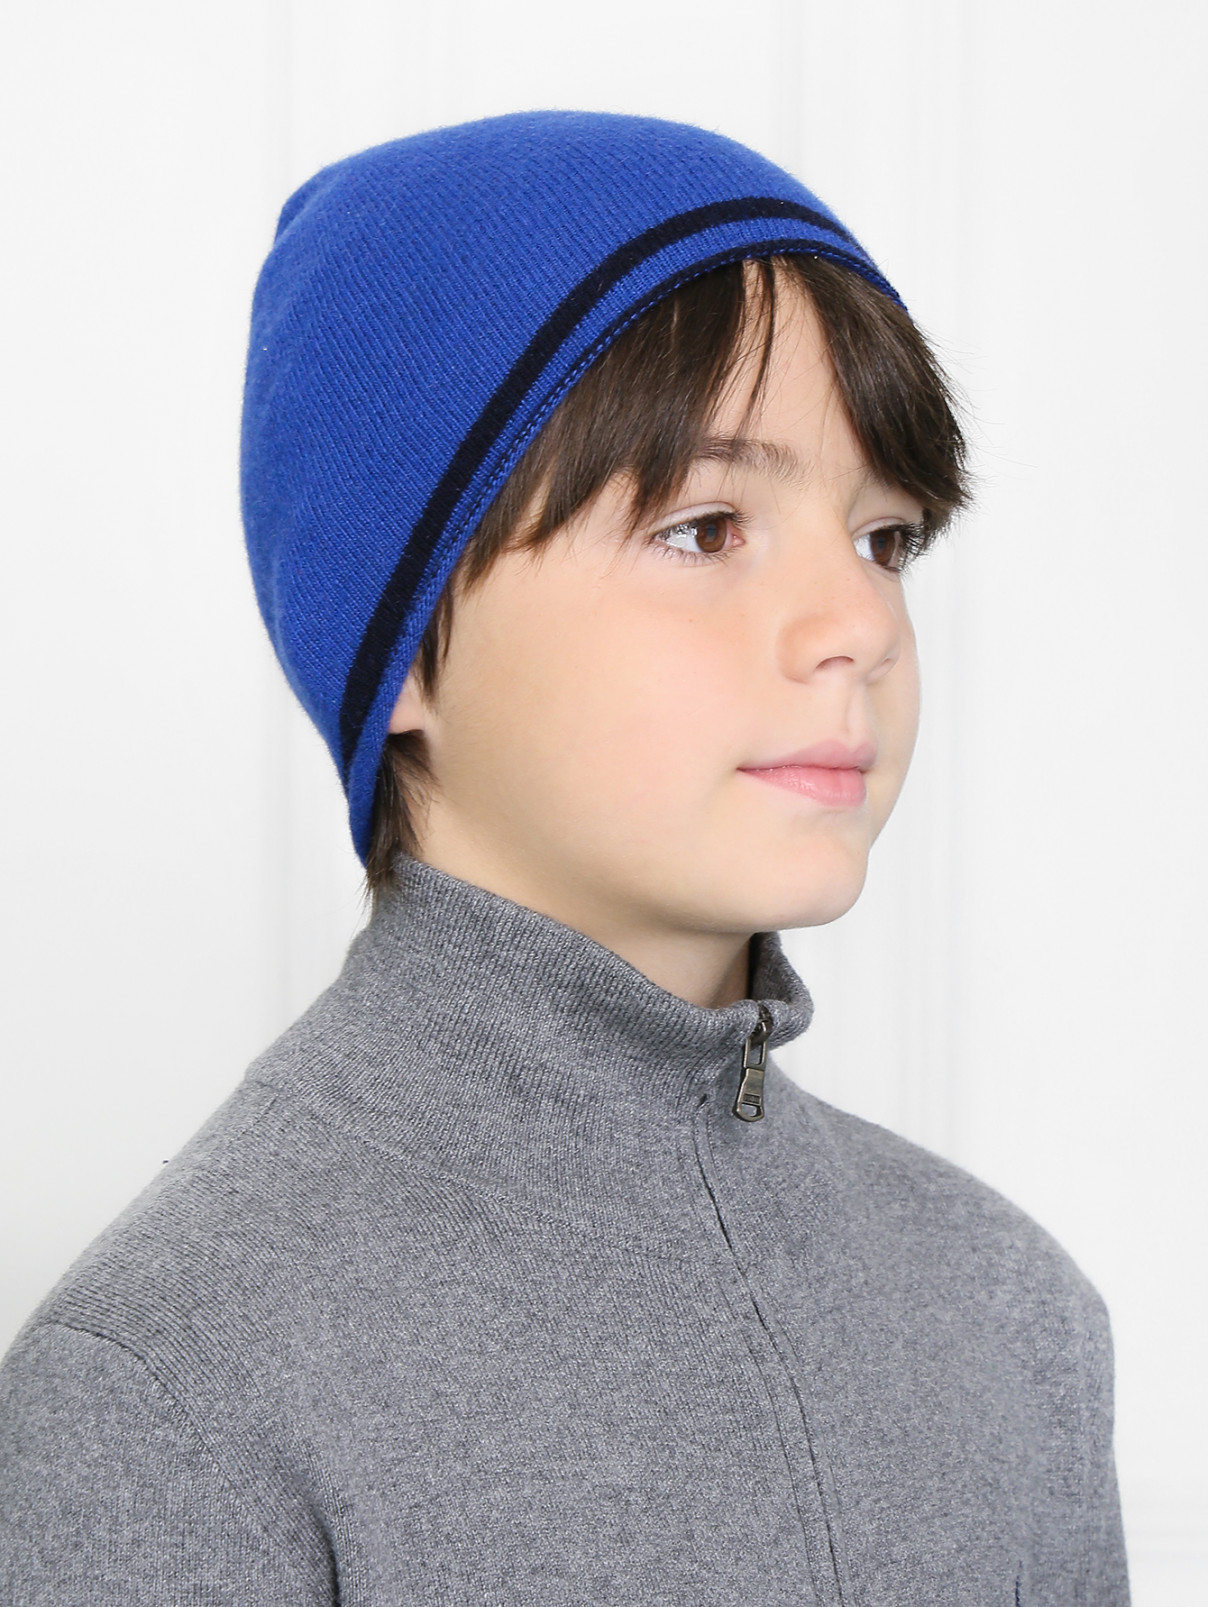 Трикотажная шапка мелкой вязки Nanan  –  Модель Общий вид  – Цвет:  Синий